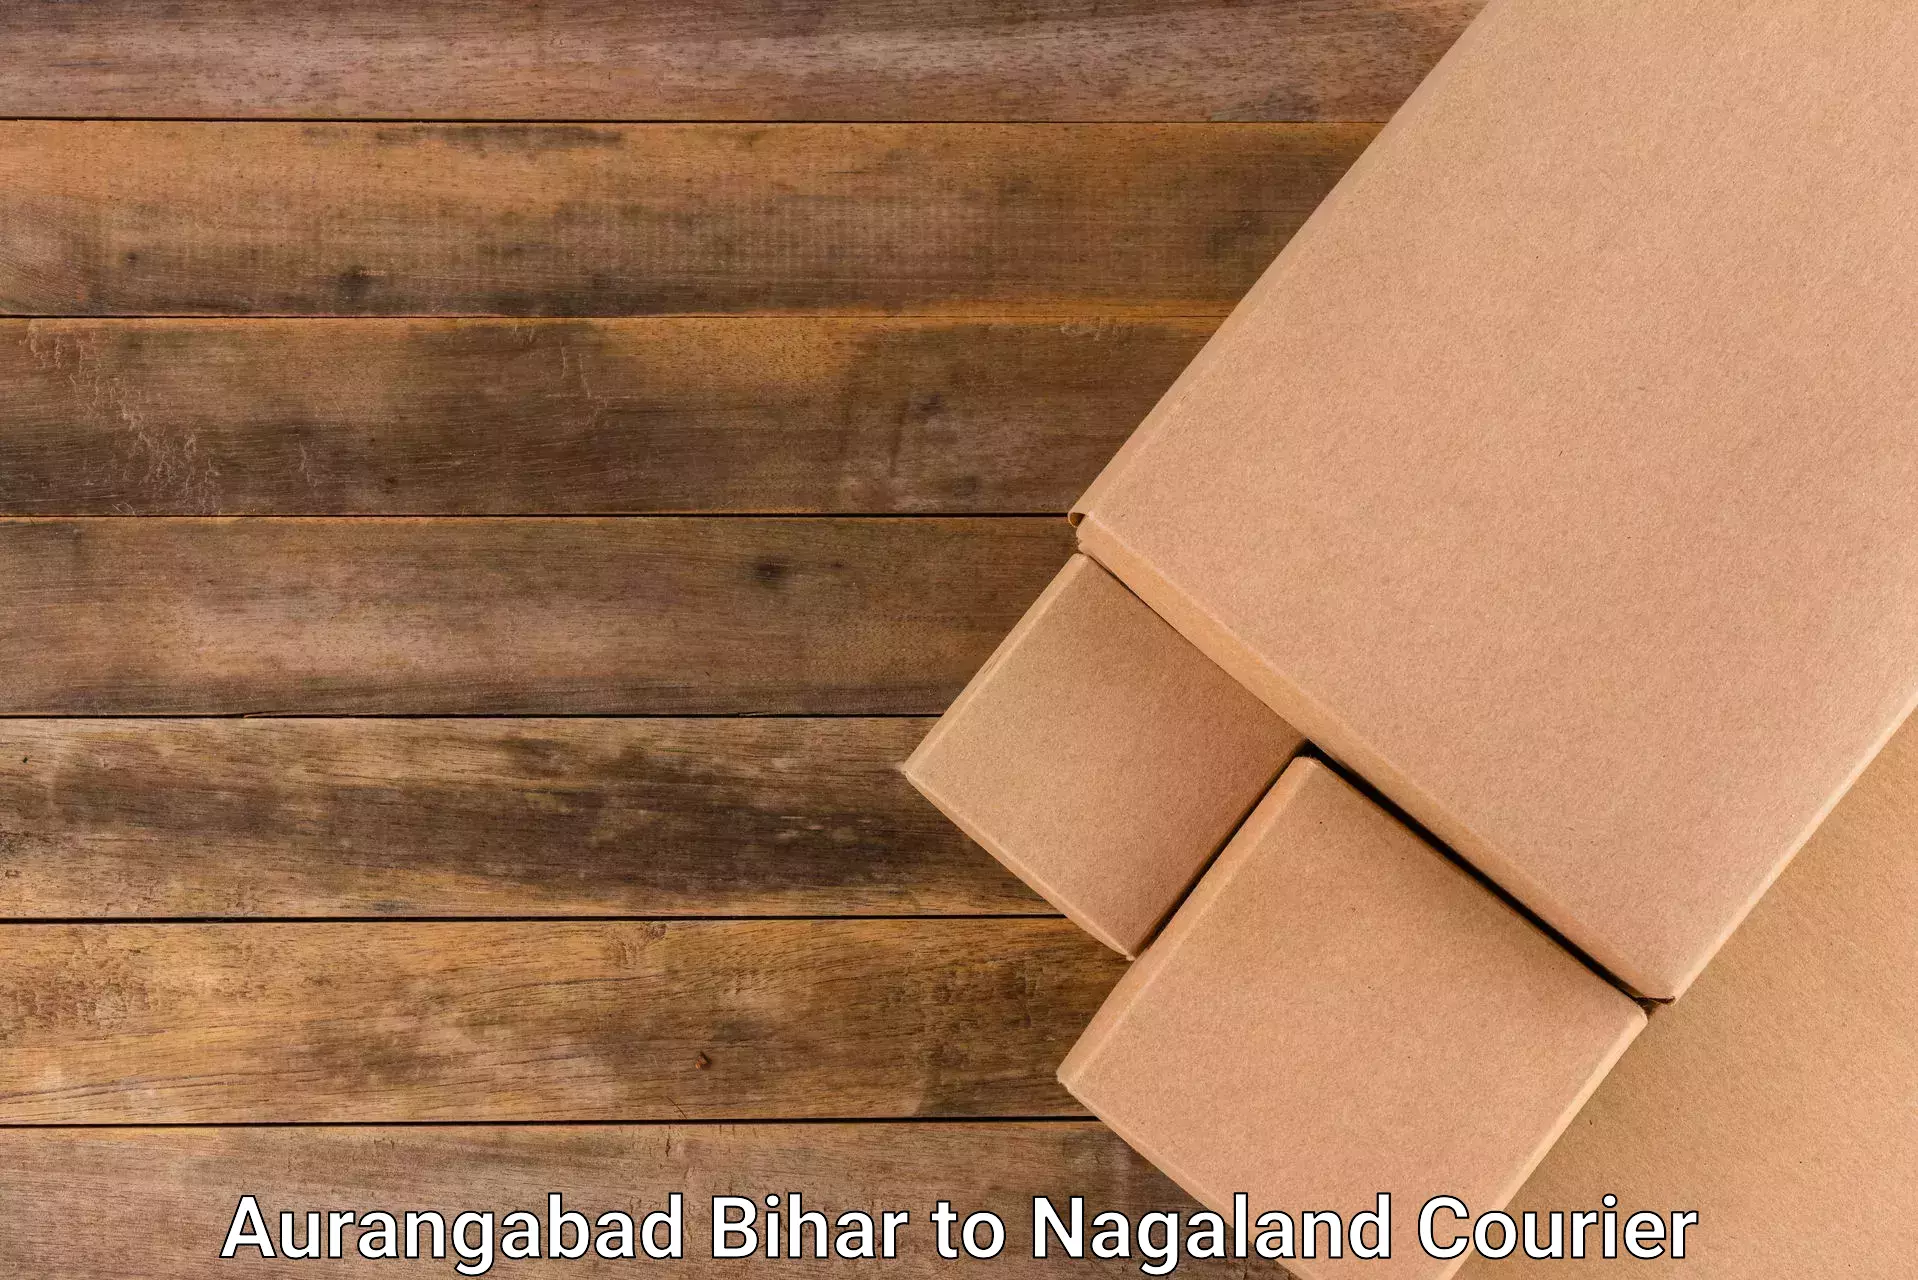 Express courier capabilities Aurangabad Bihar to Nagaland